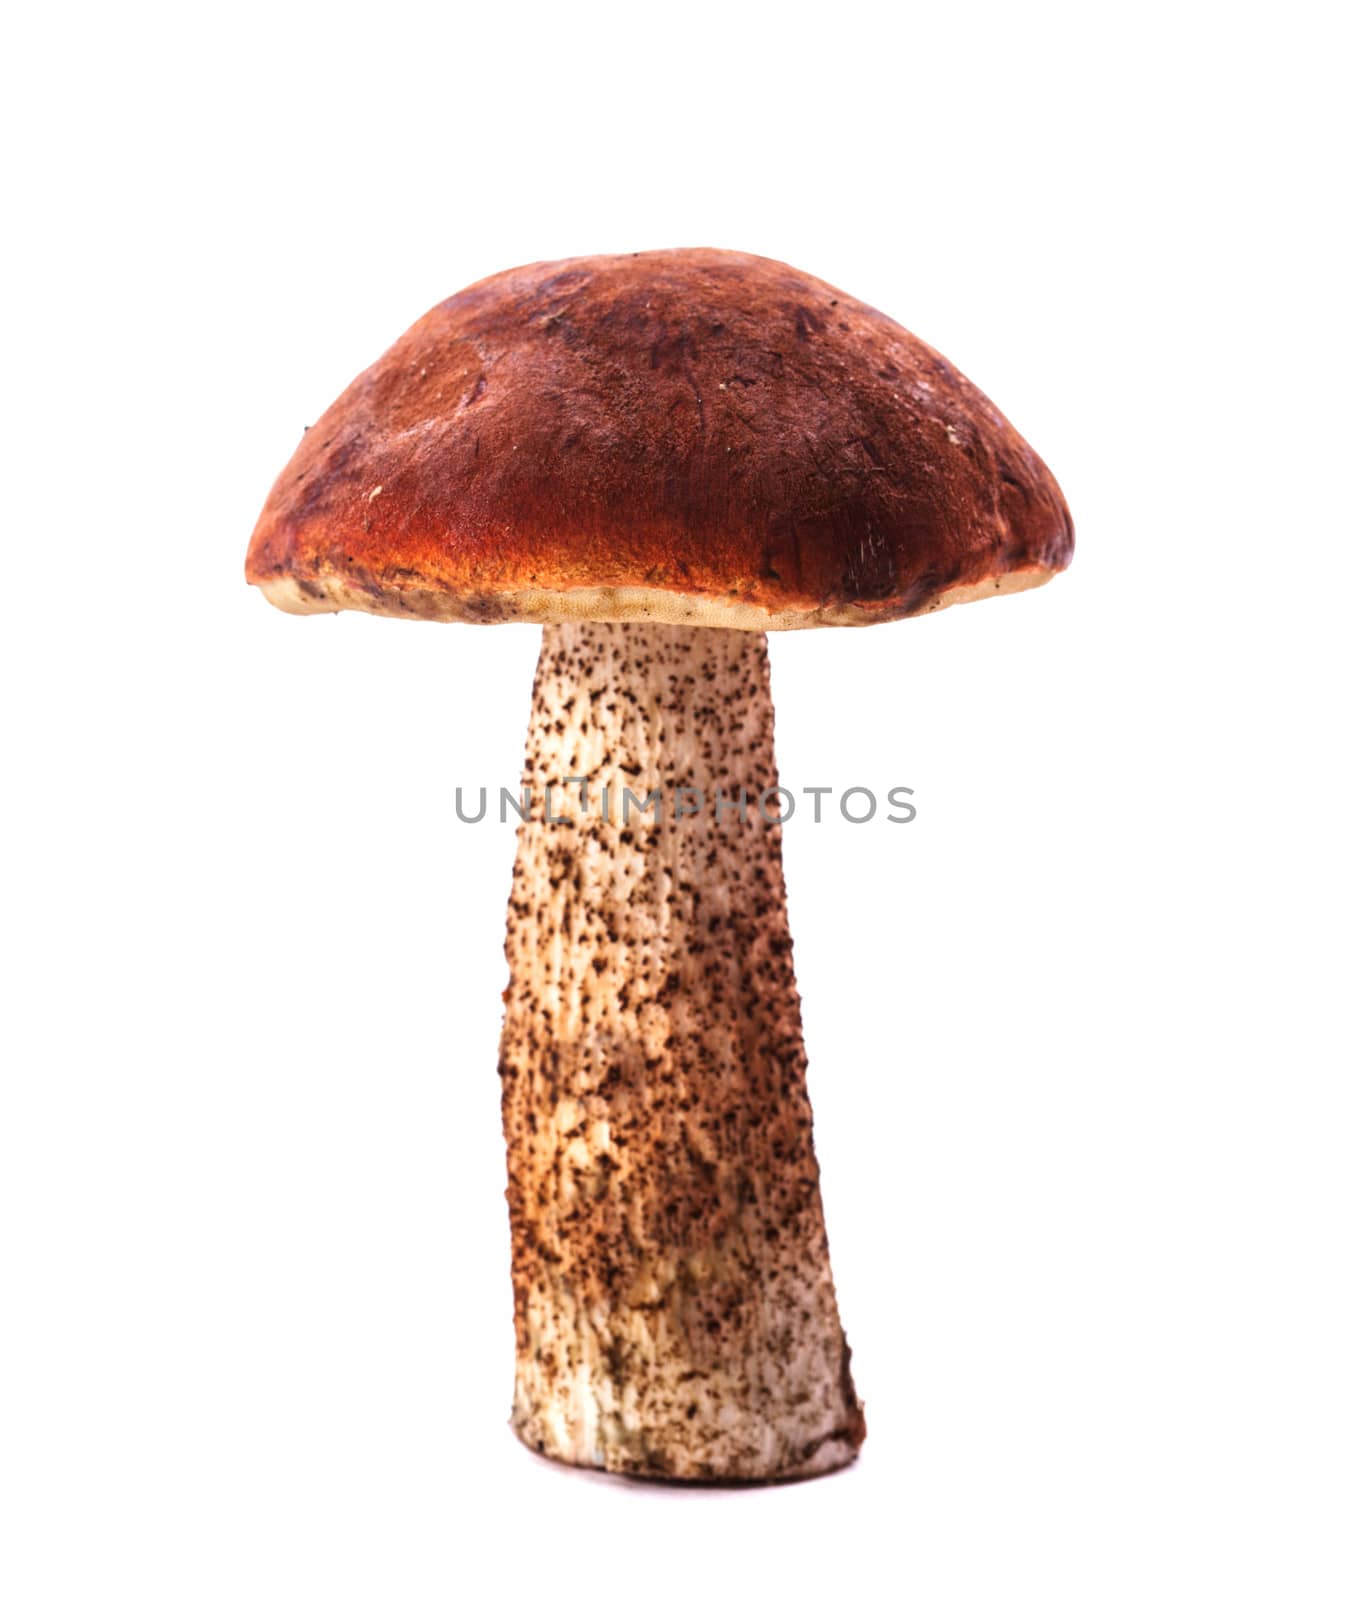 Orange-cap boletus mushroom isolated on white background